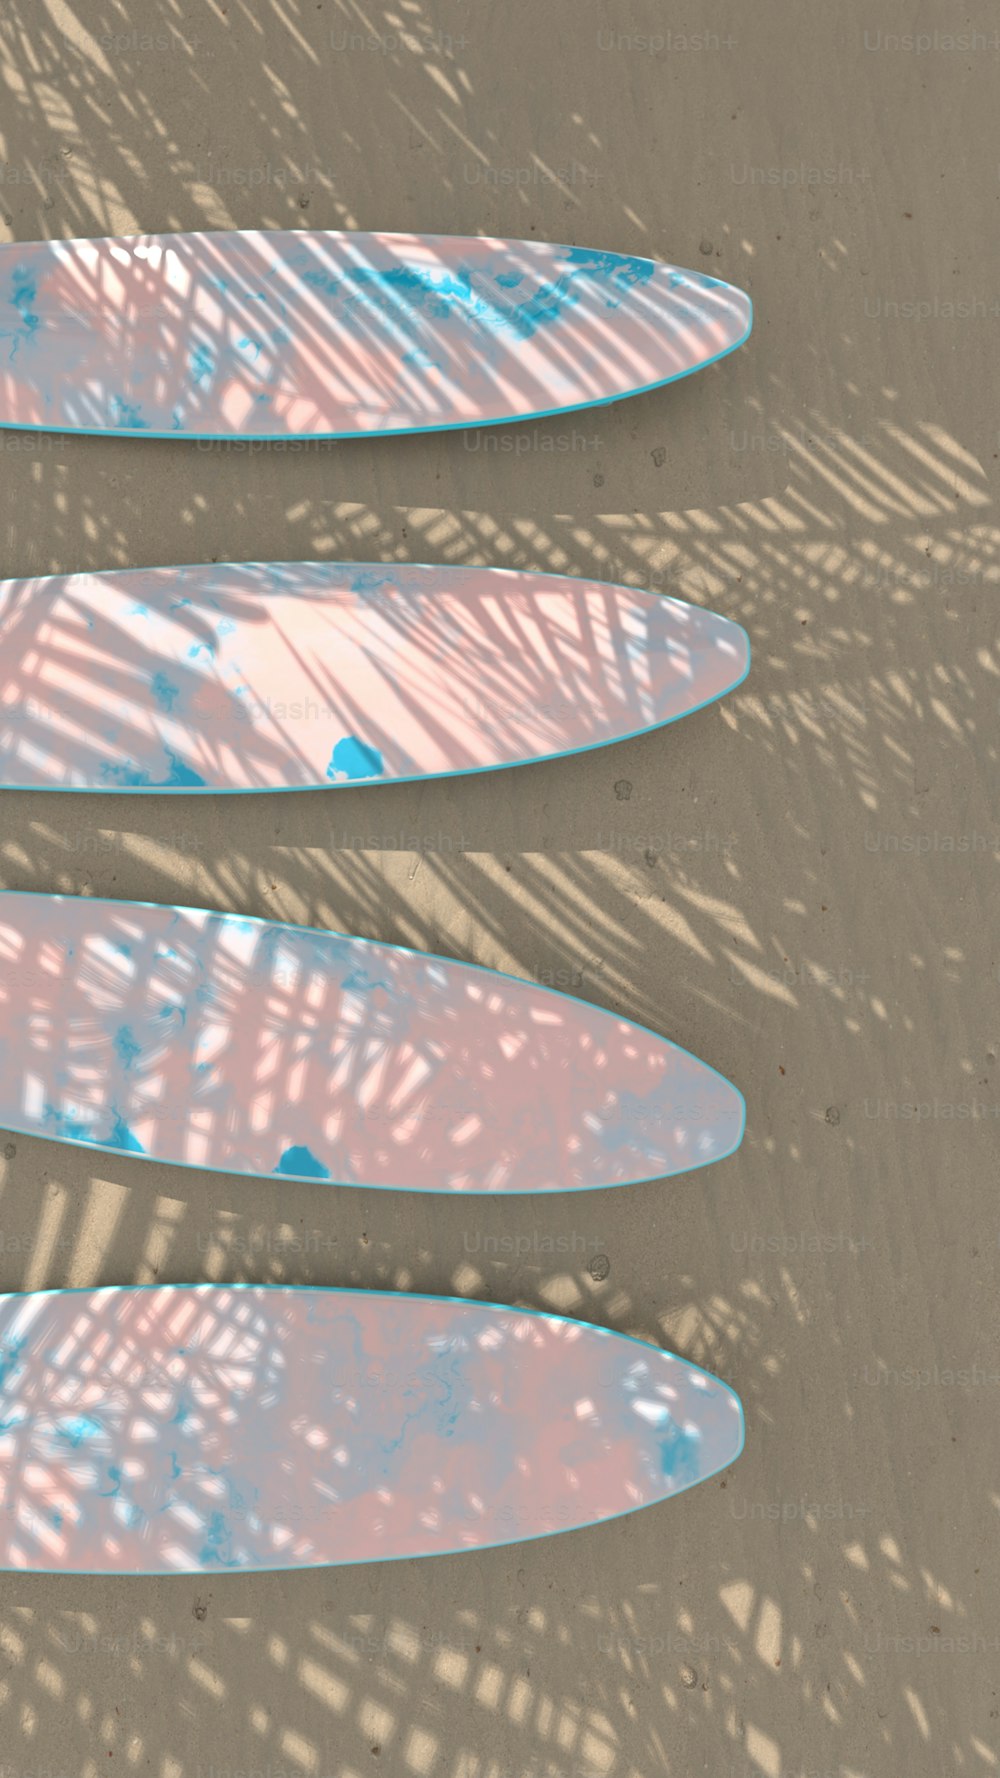 Eine Gruppe von Surfbrettern, die auf einem Sandstrand liegen